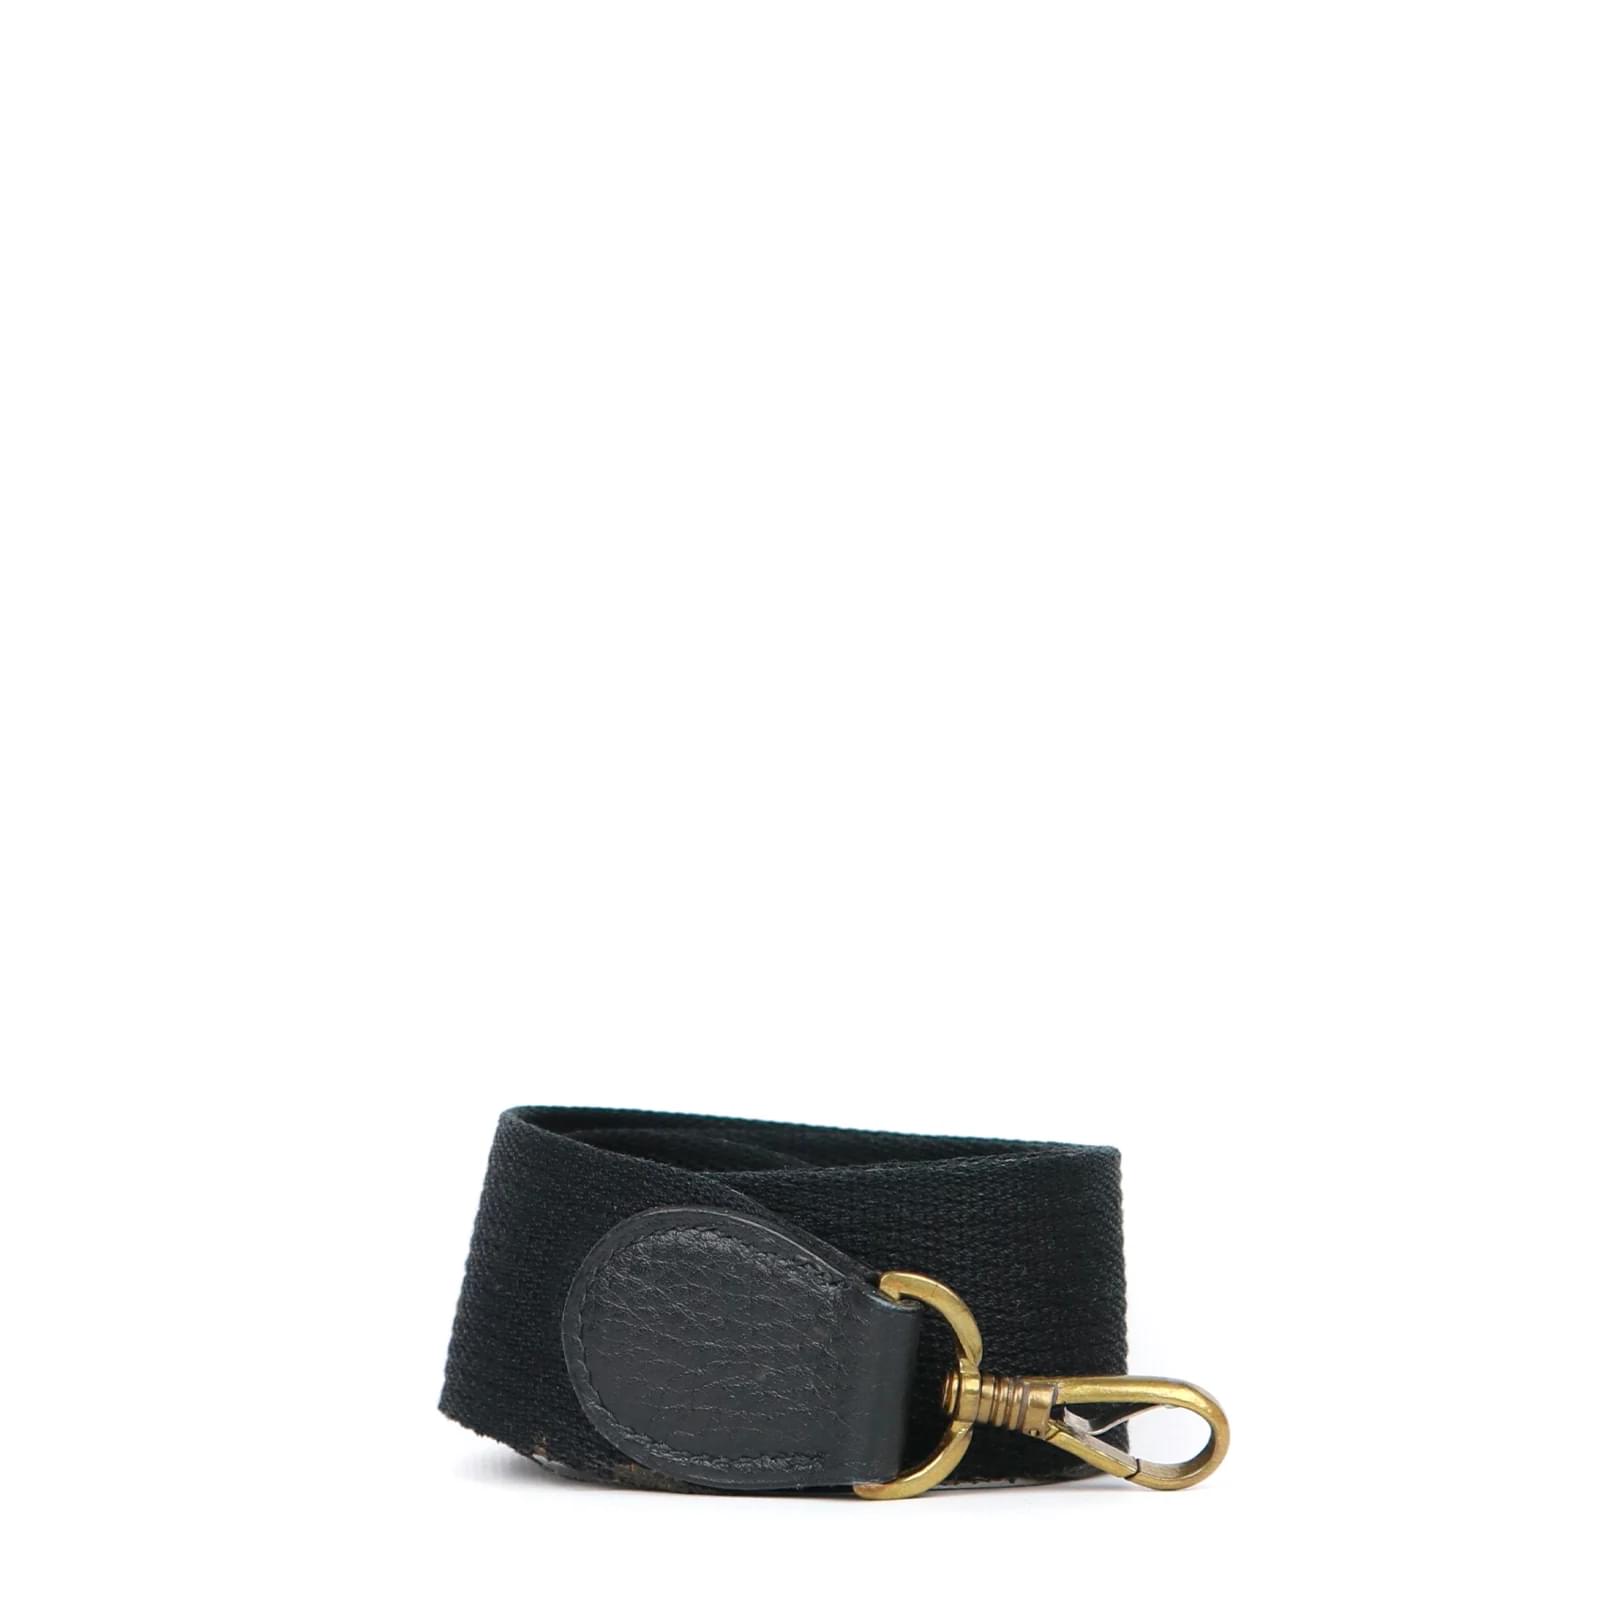 Shop Women's Hermes Birkin Bag 30cm in Black Togo Leather